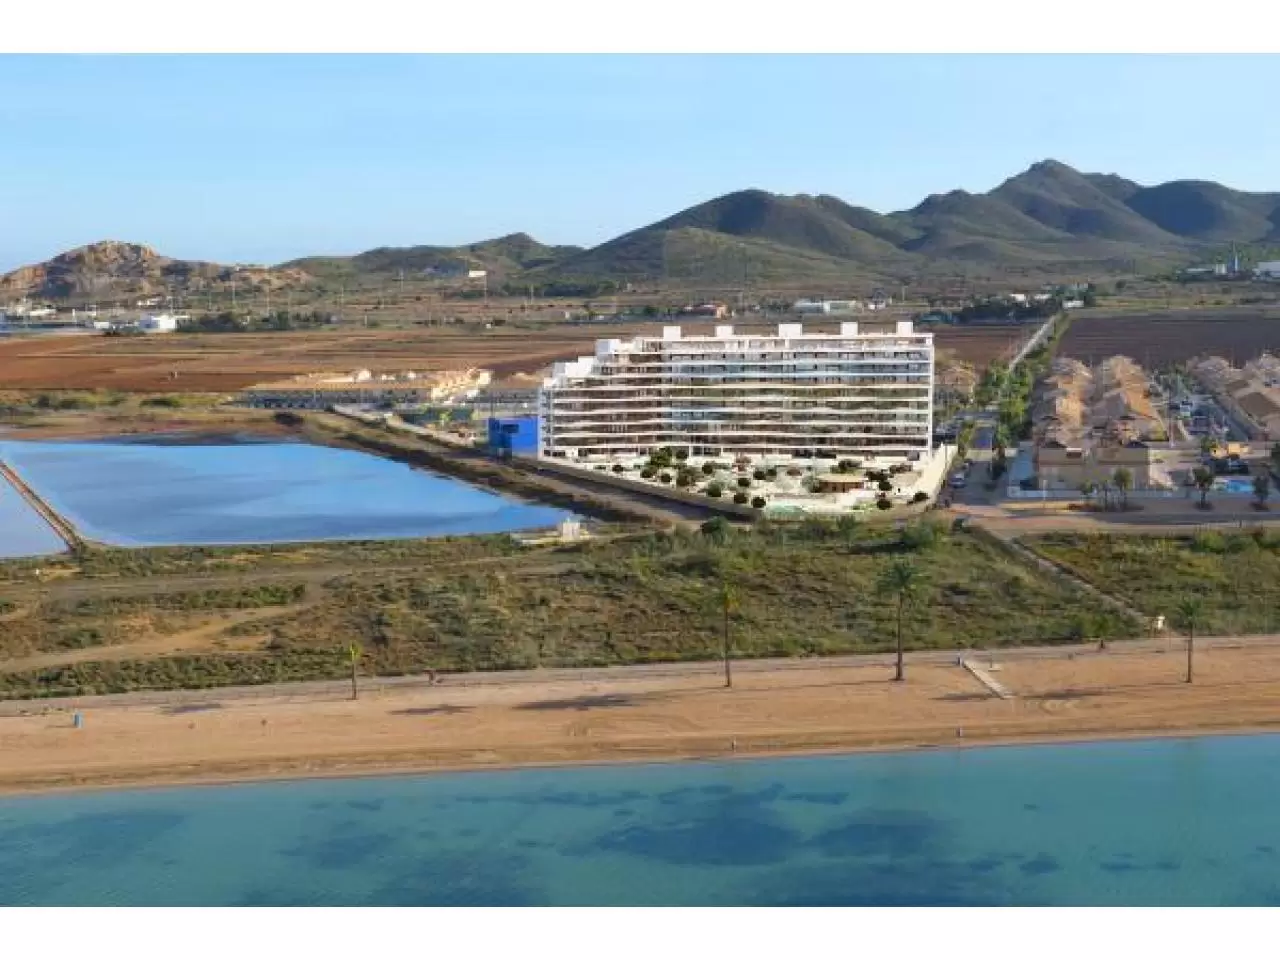 Недвижимость в Испании, Новые квартиры на первой линии пляжа от застройщика в Ла Манга - 1